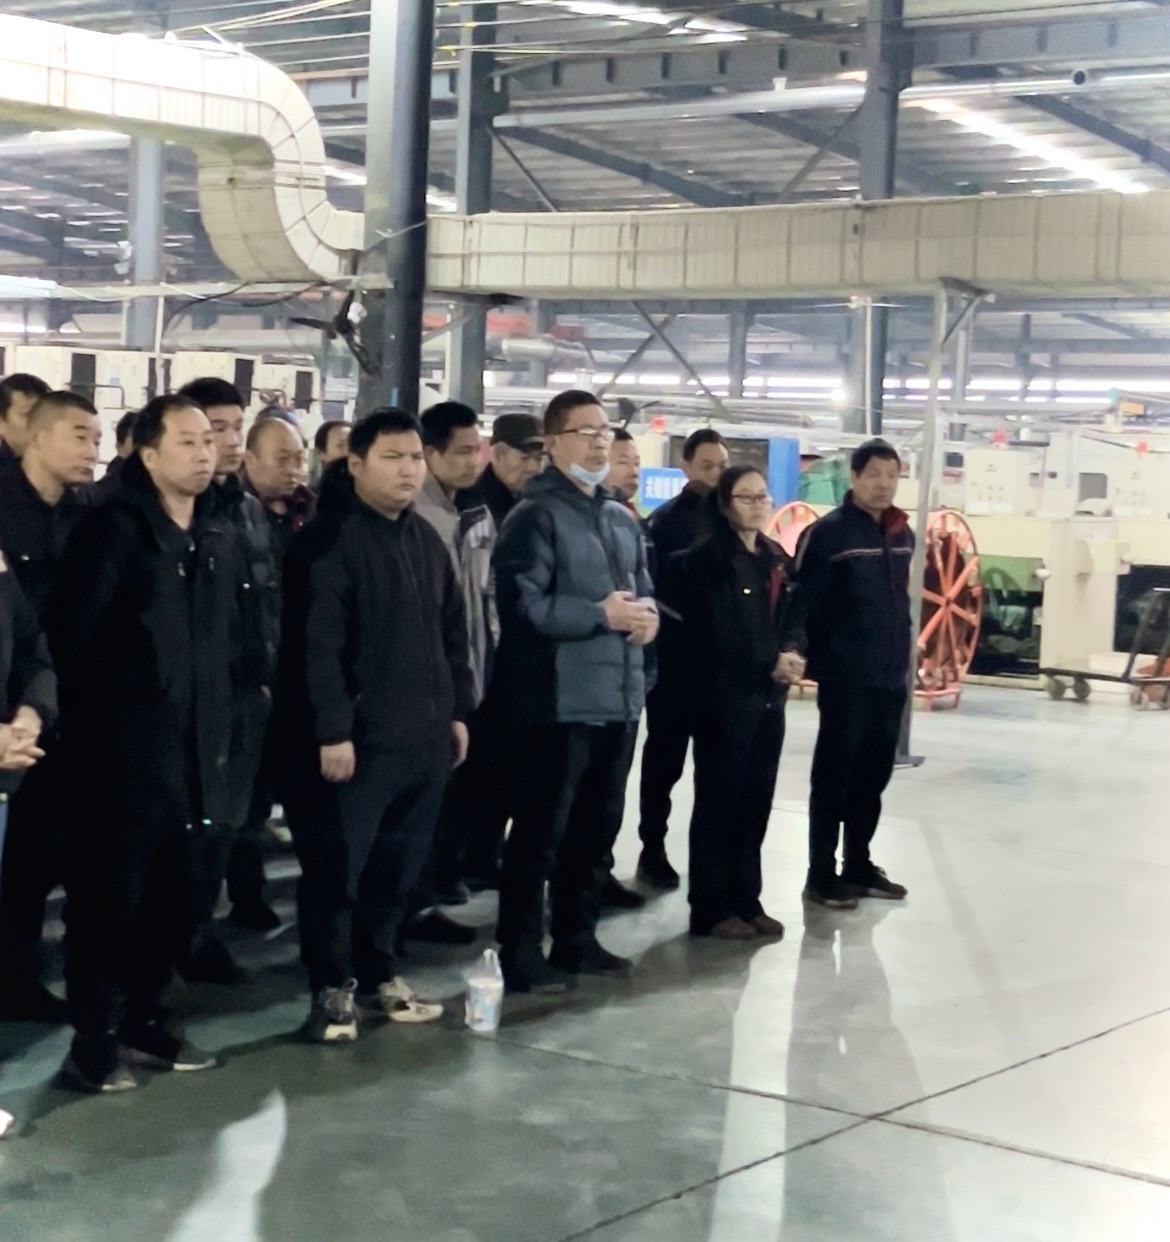 邢臺市環日橡塑制品有限公司進行二月份《大晨會會議》